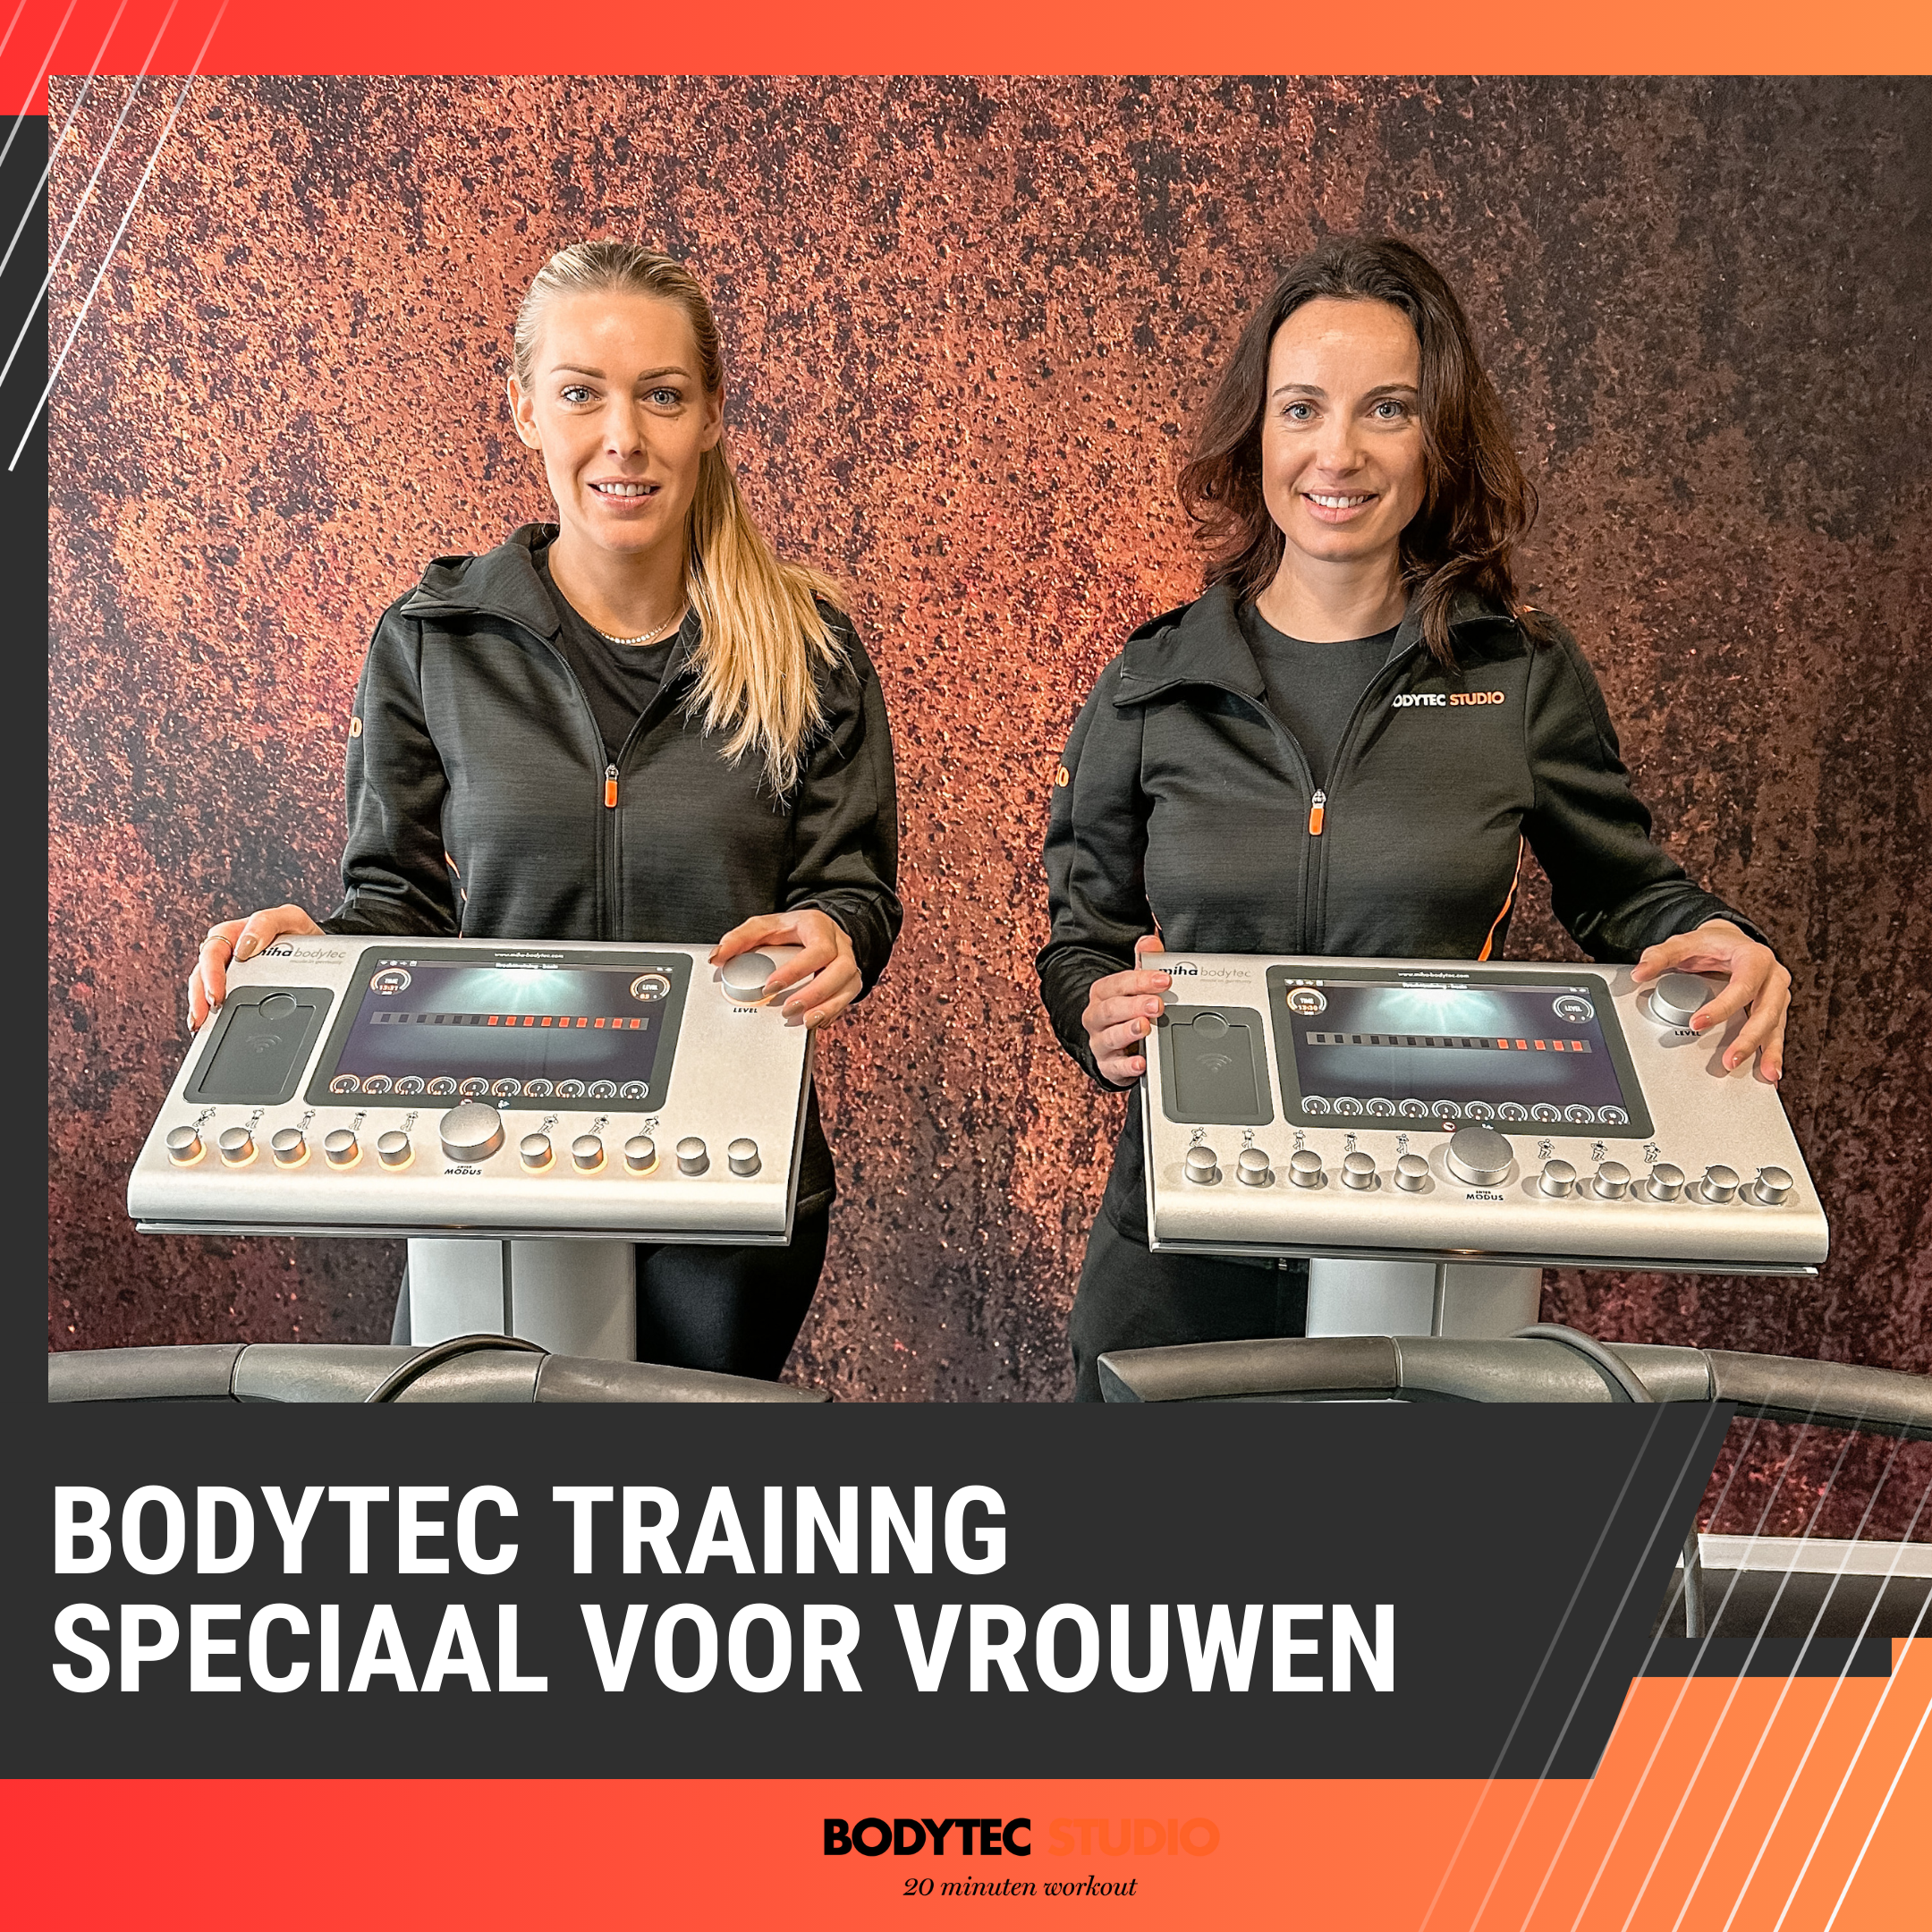 Bodytec training Den Haag voor vrouwen